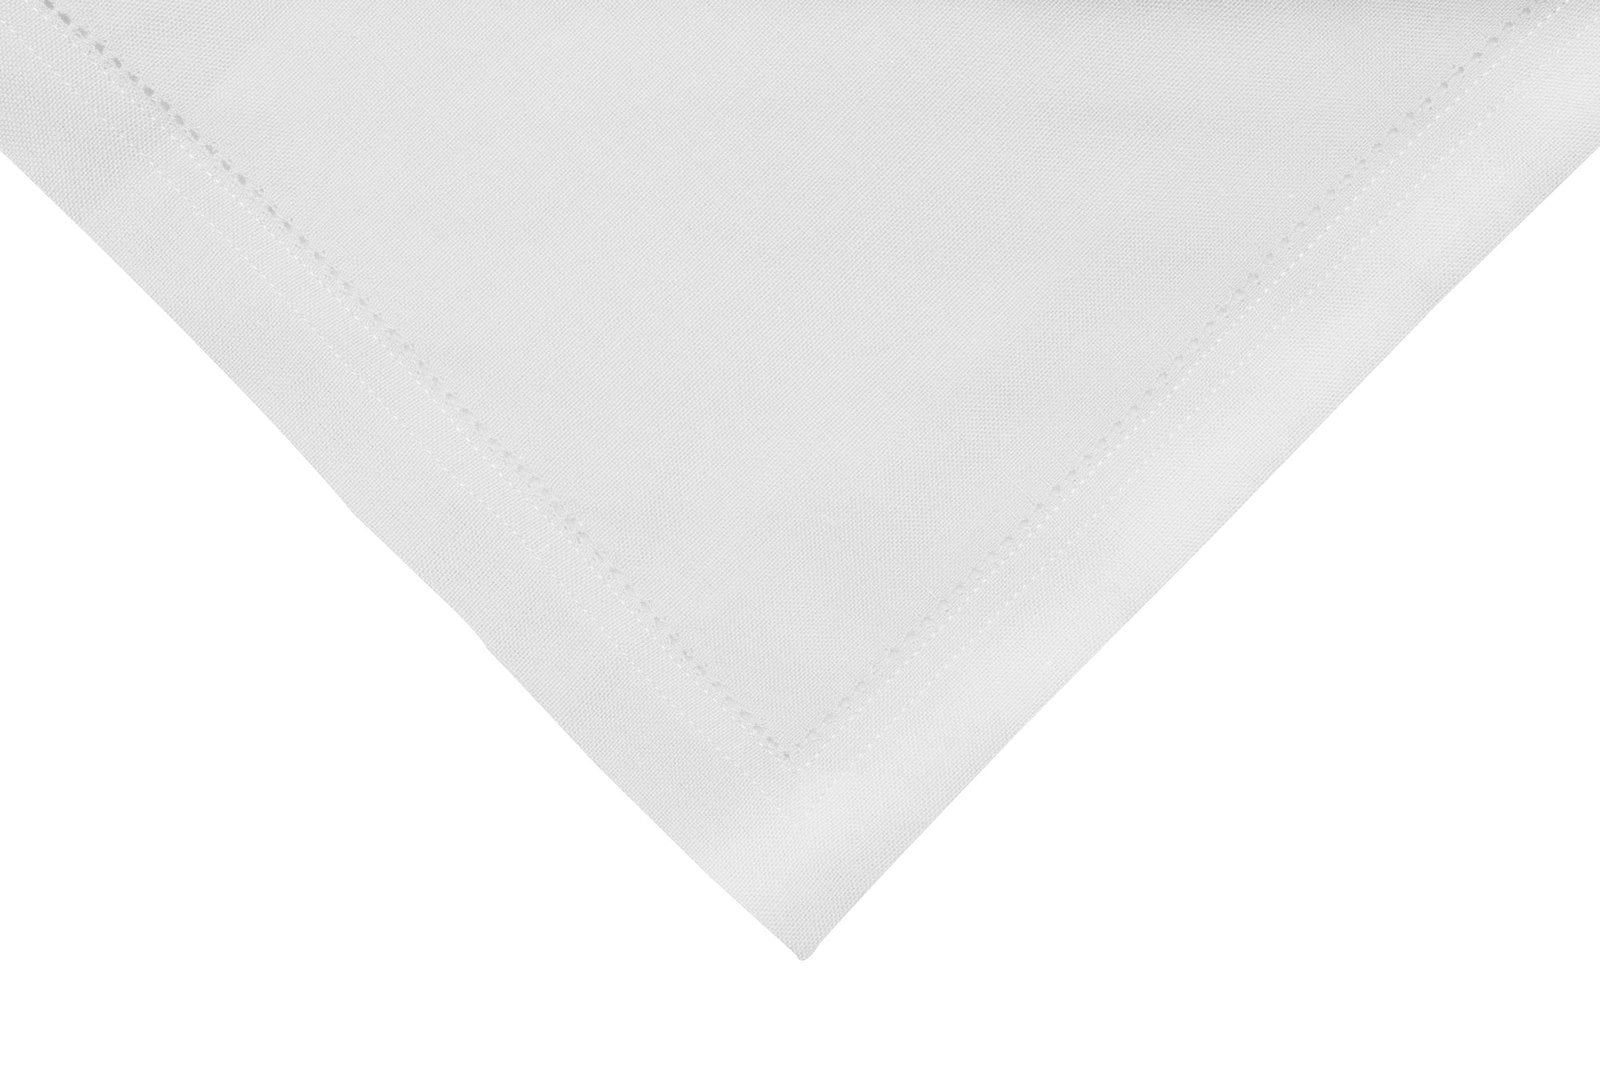 Elegant Hemstitch Napkin - 45 cm x 45 cm in White